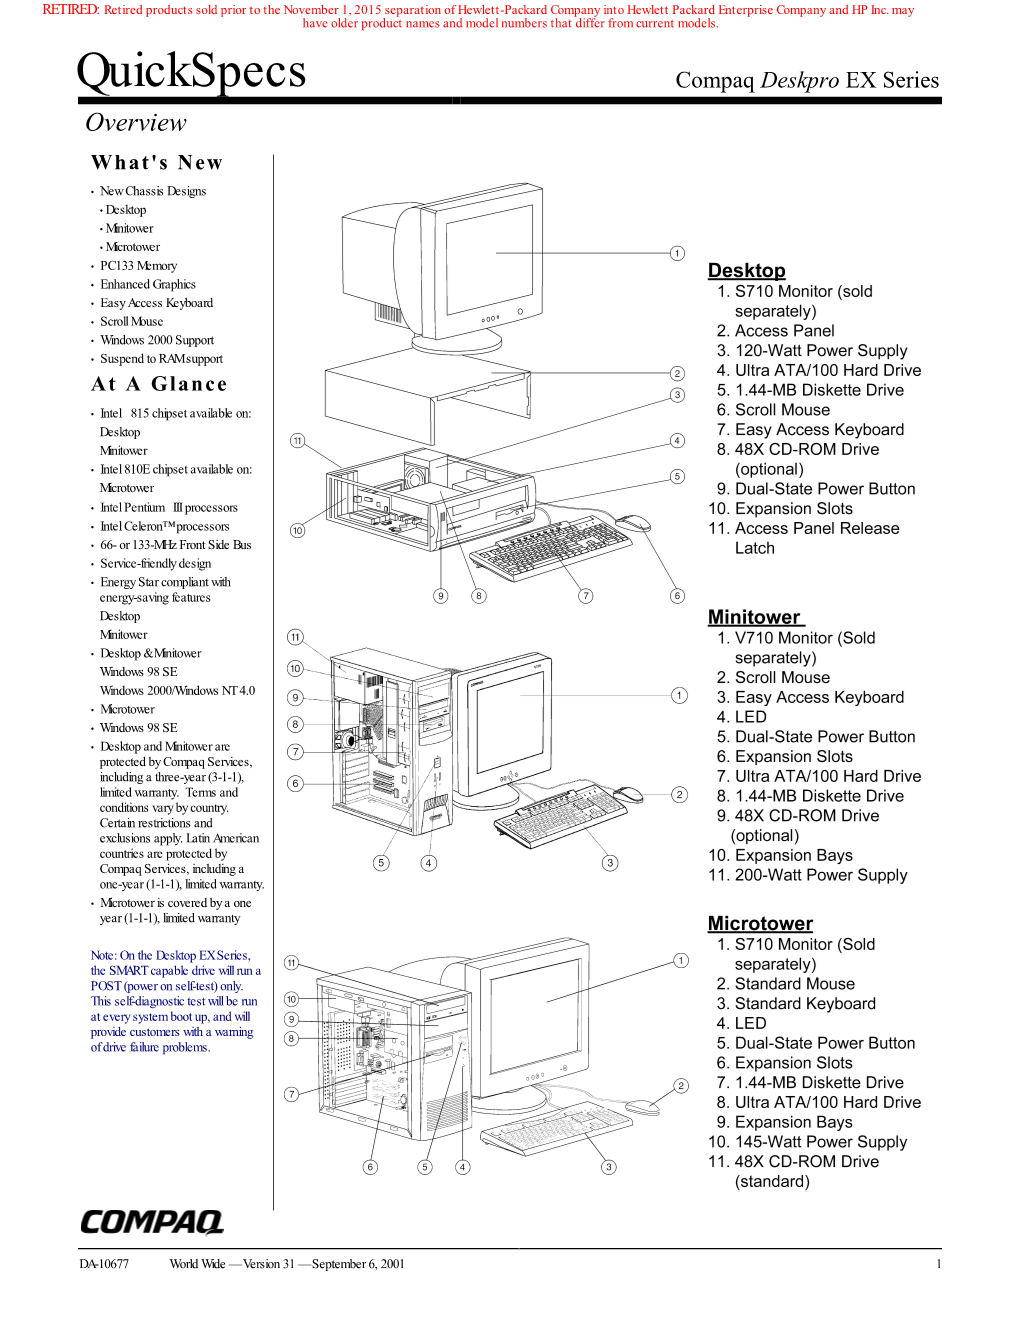 Quickspecs Compaq Deskpro EX Series